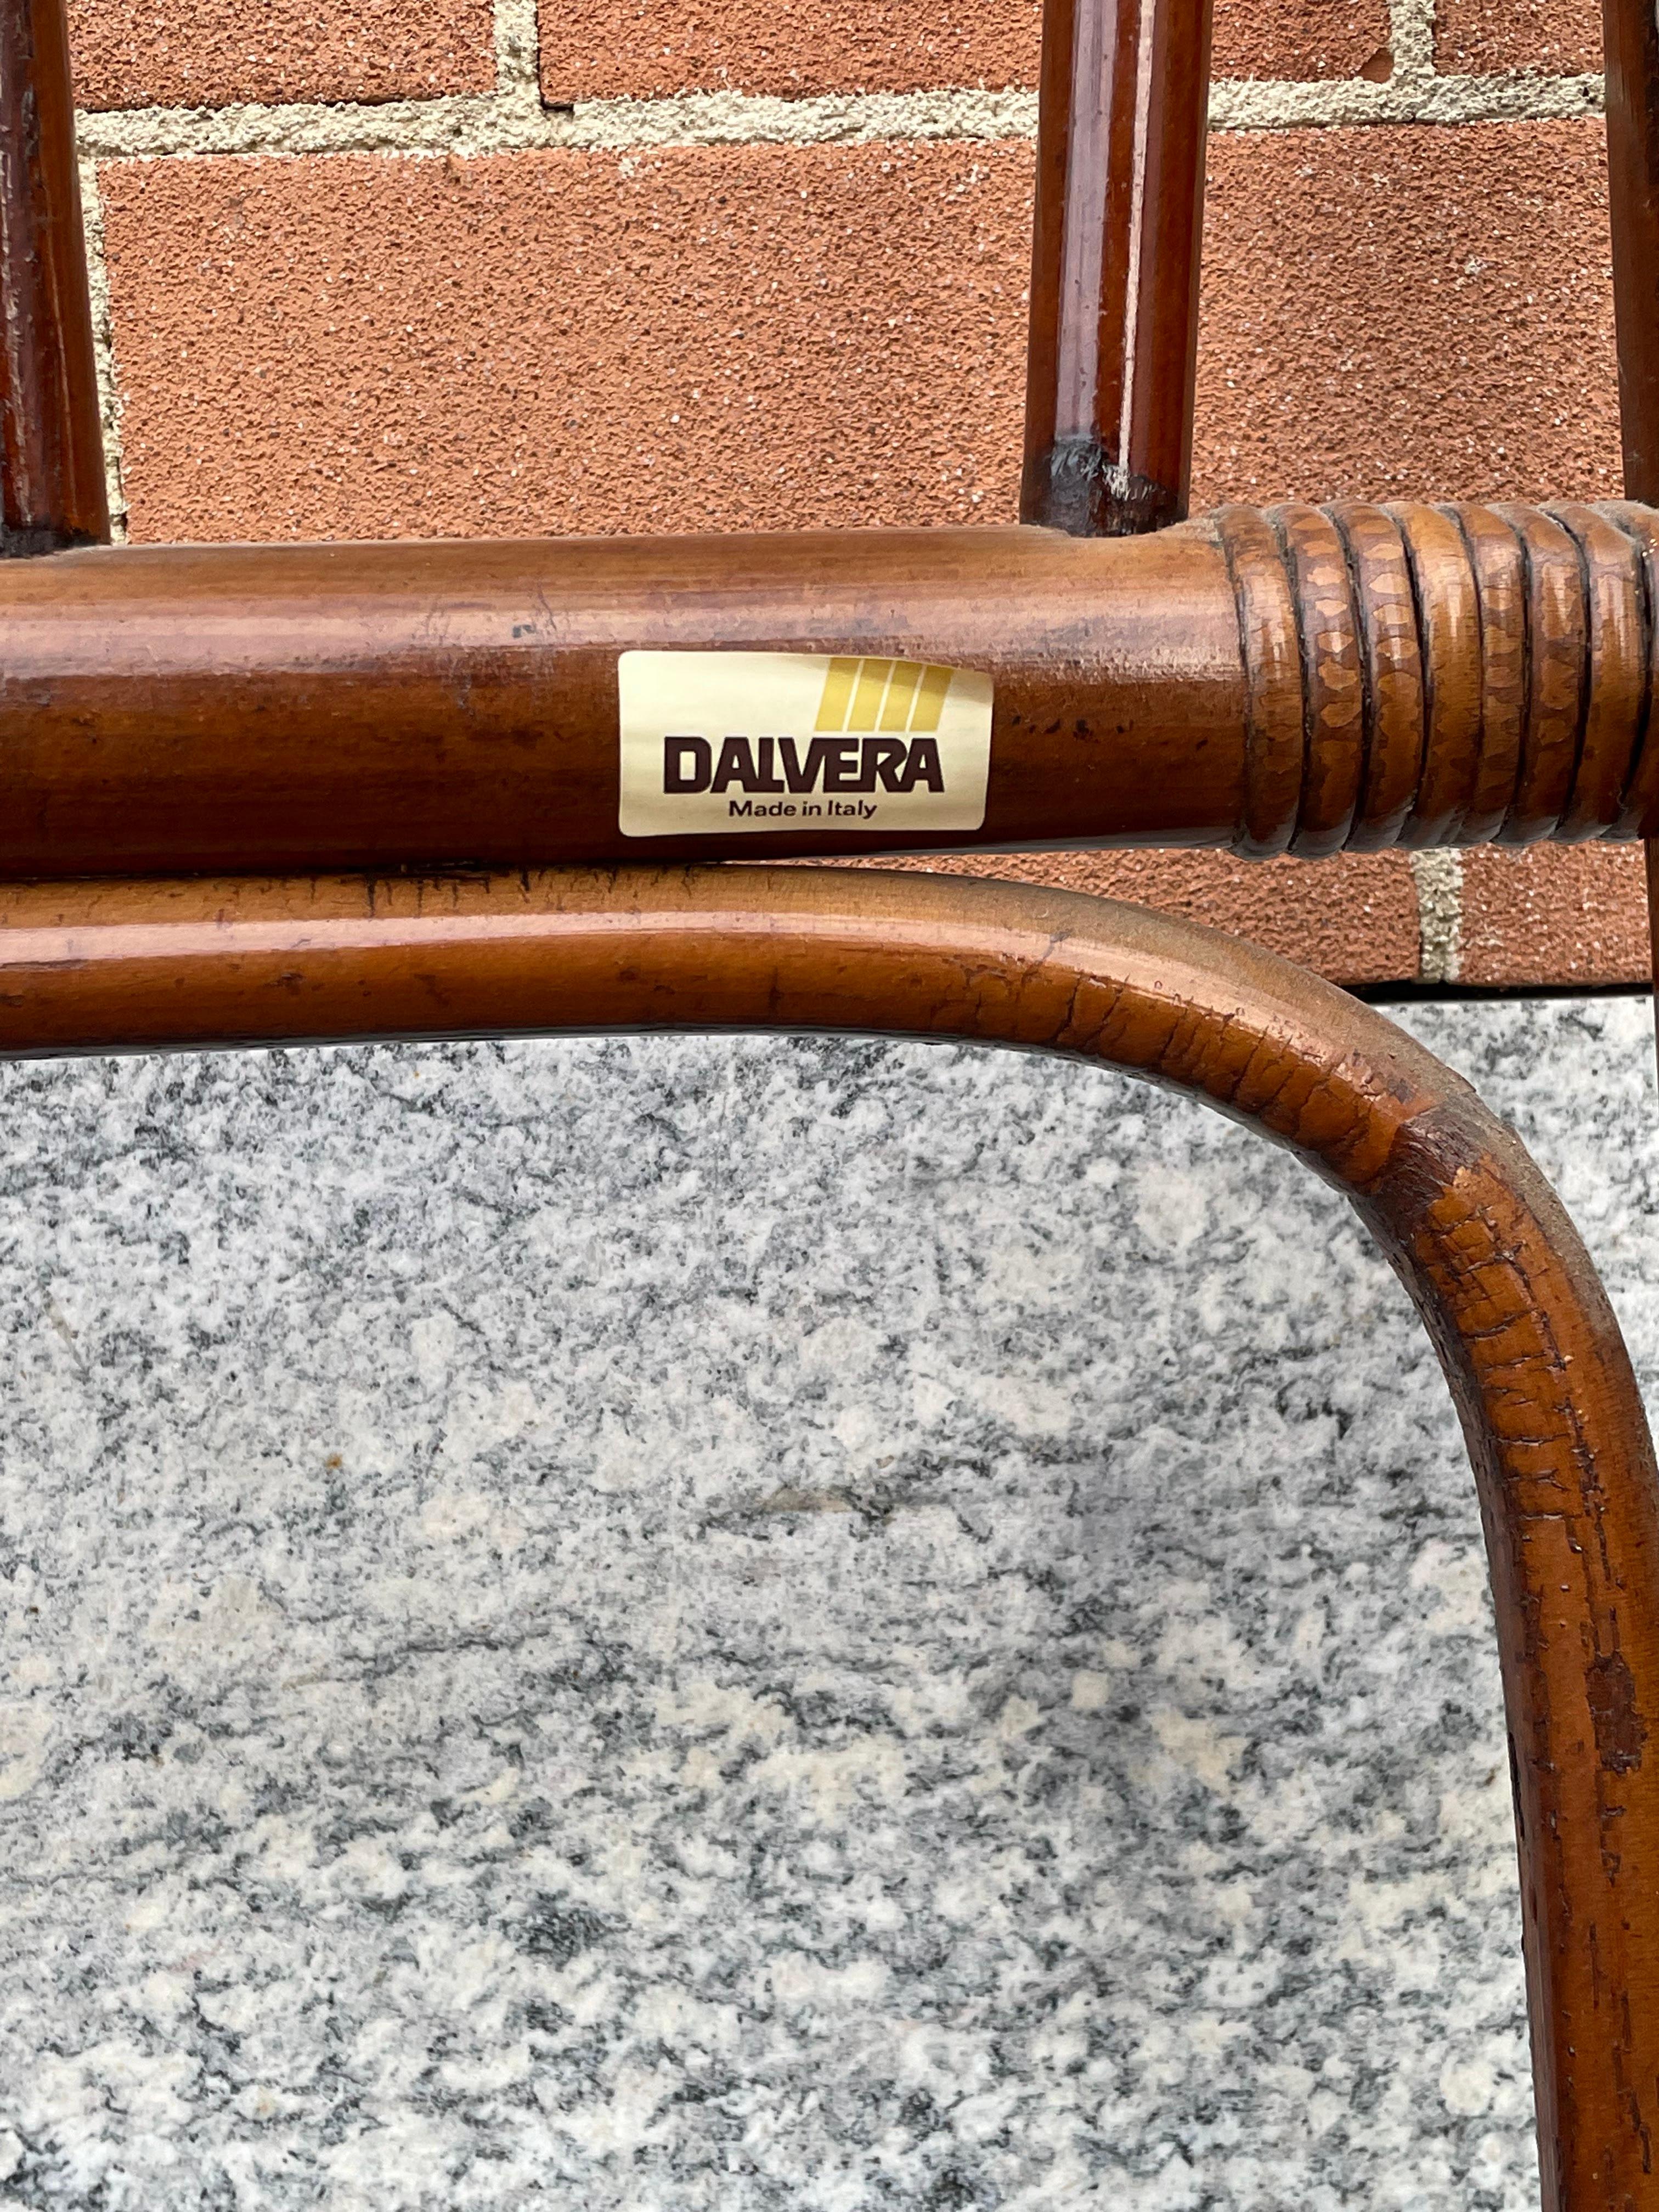 Lit double en bambou des années 1970 produit par l'usine historique de meubles Dal Vera à Conegliano Veneto (Italie), fondée en 1884.

La structure est en bon état, il n'y a que quelques signes d'utilisation, également visibles sur les photos.